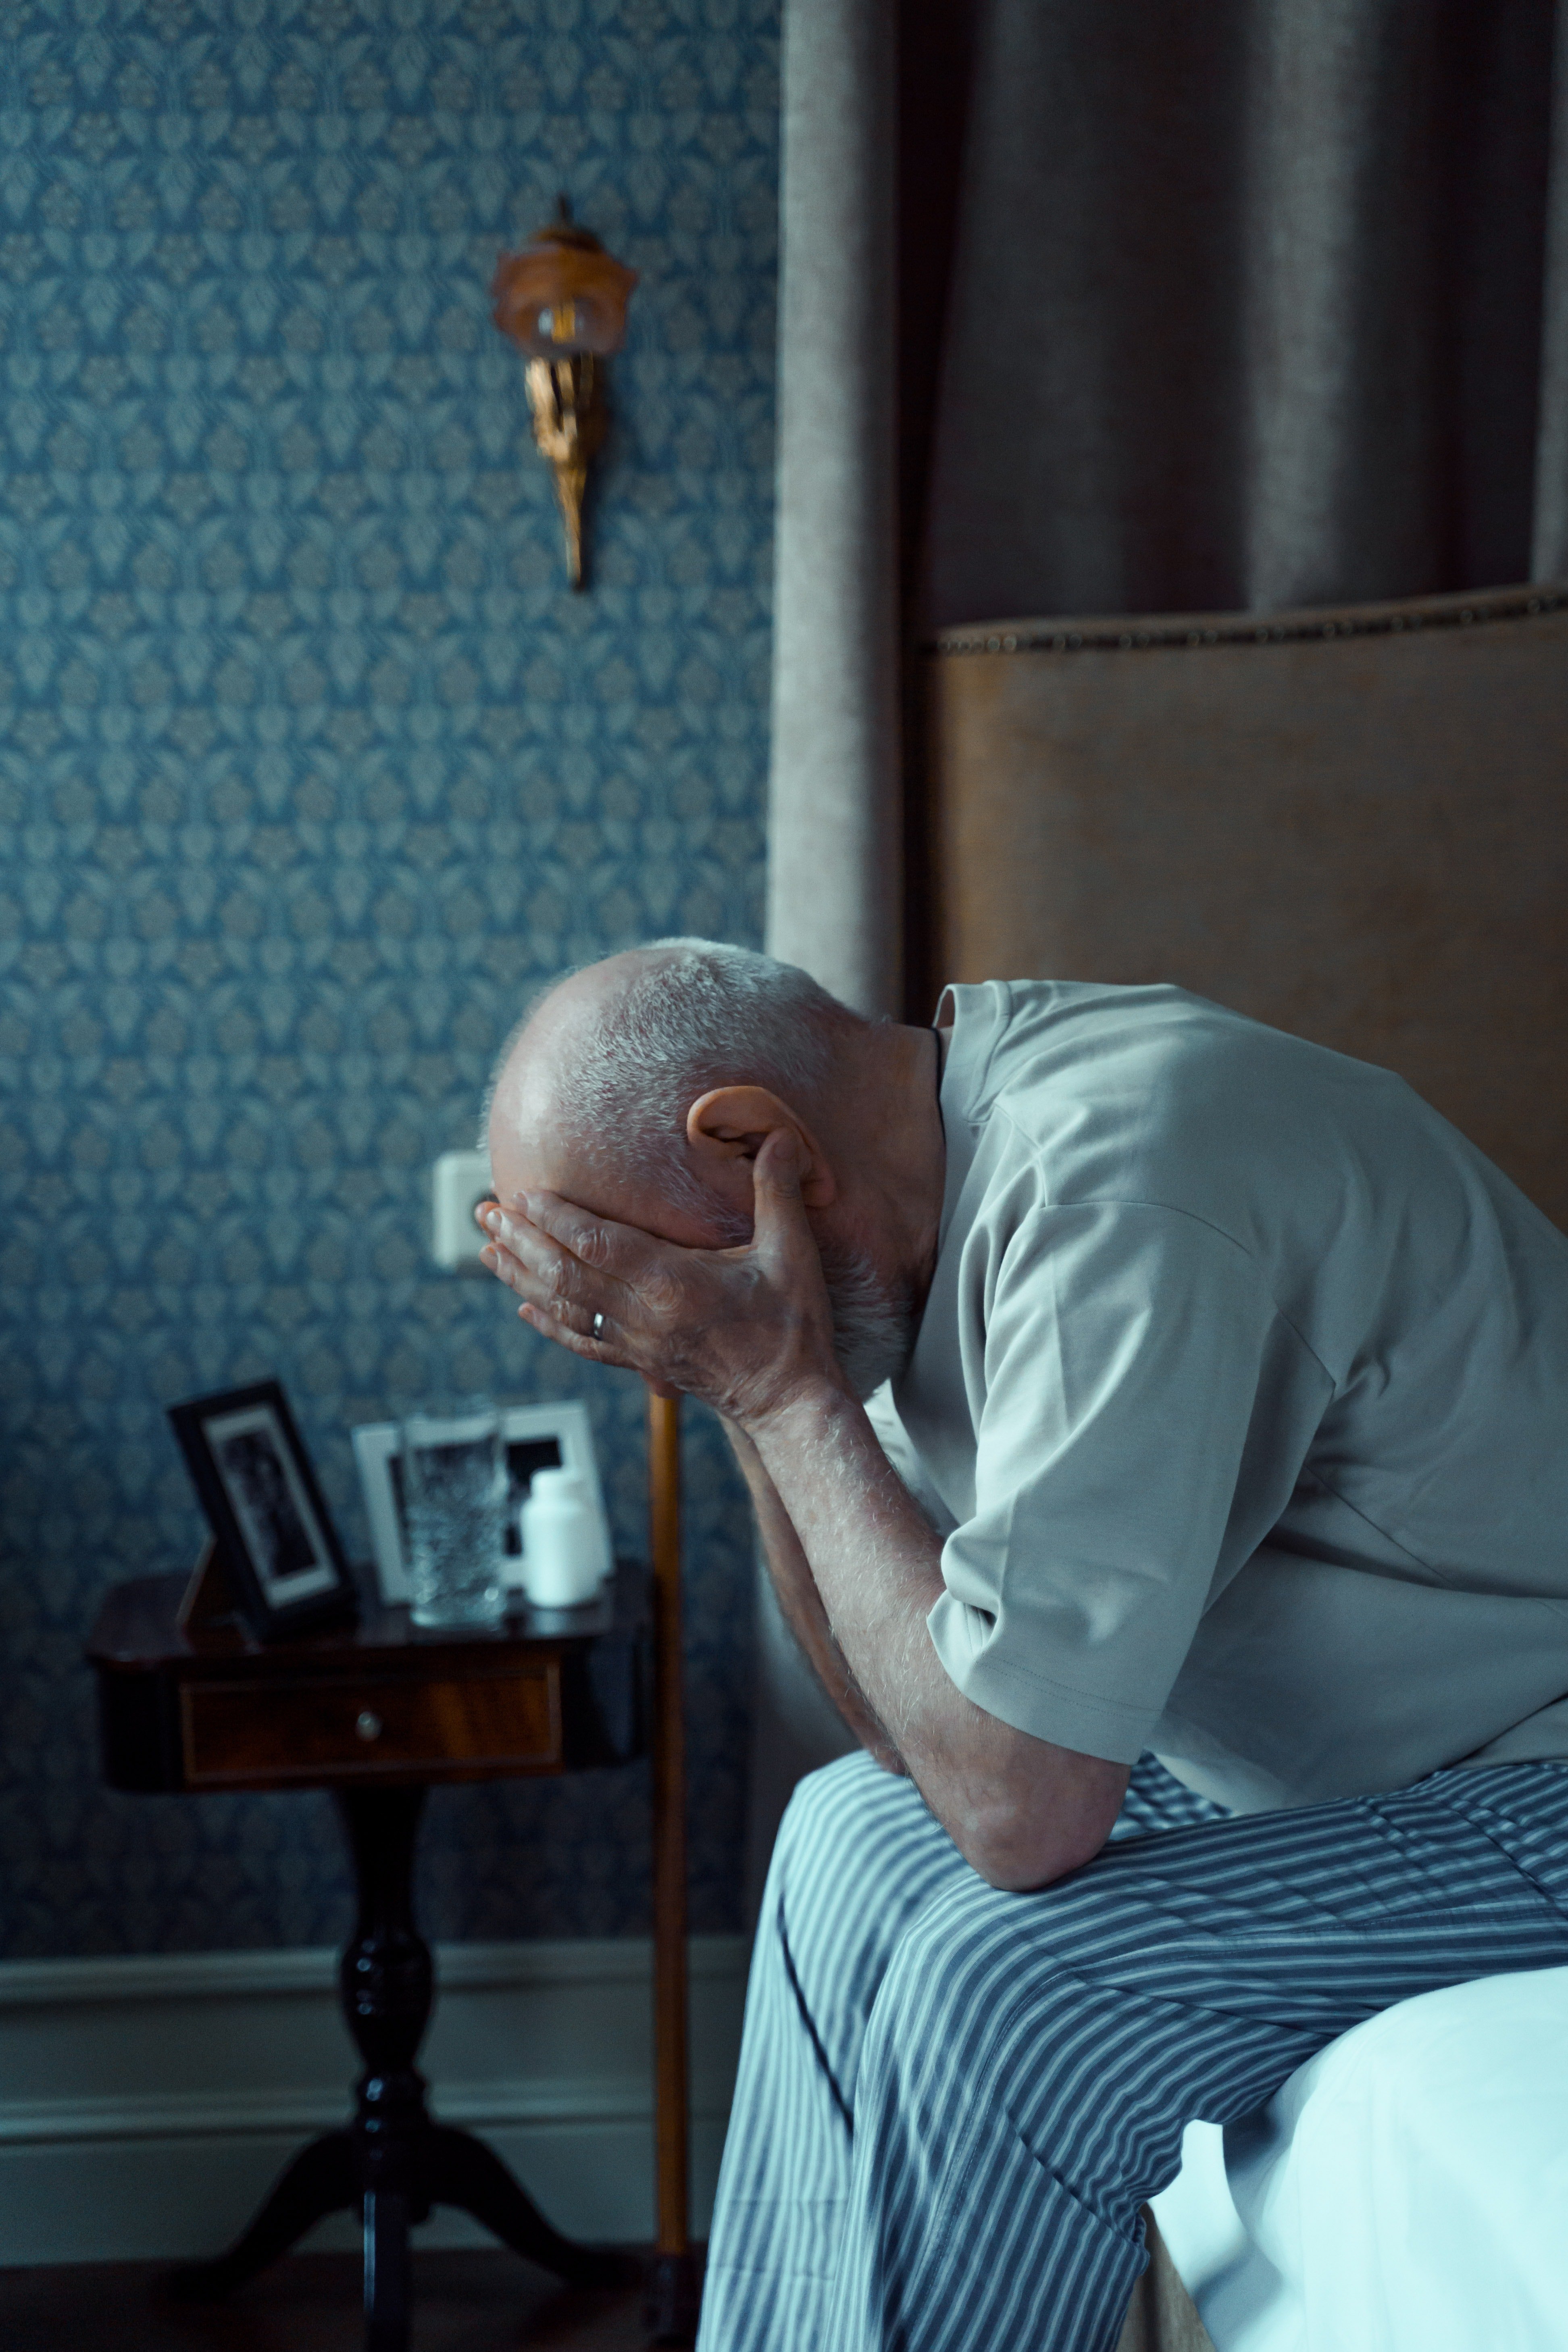 Joe felt very sad and depressed in the nursing home. | Source: Pexels